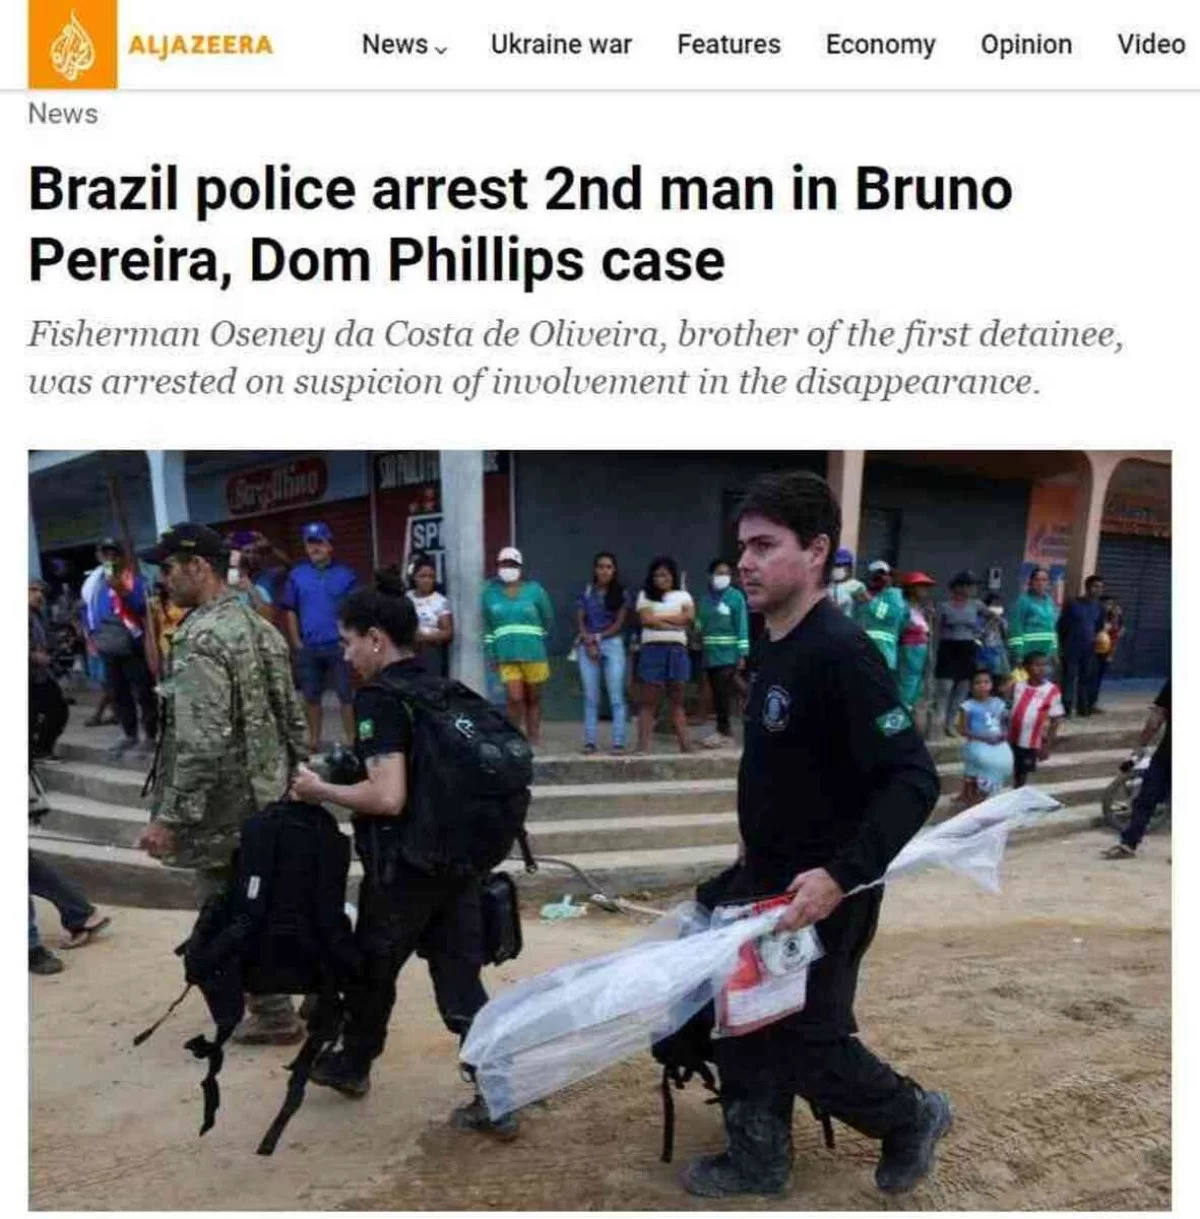 Imprensa internacional repercute corpos achados na busca por Bruno e Dom (Foto: Reprodução/Al Jazeera)